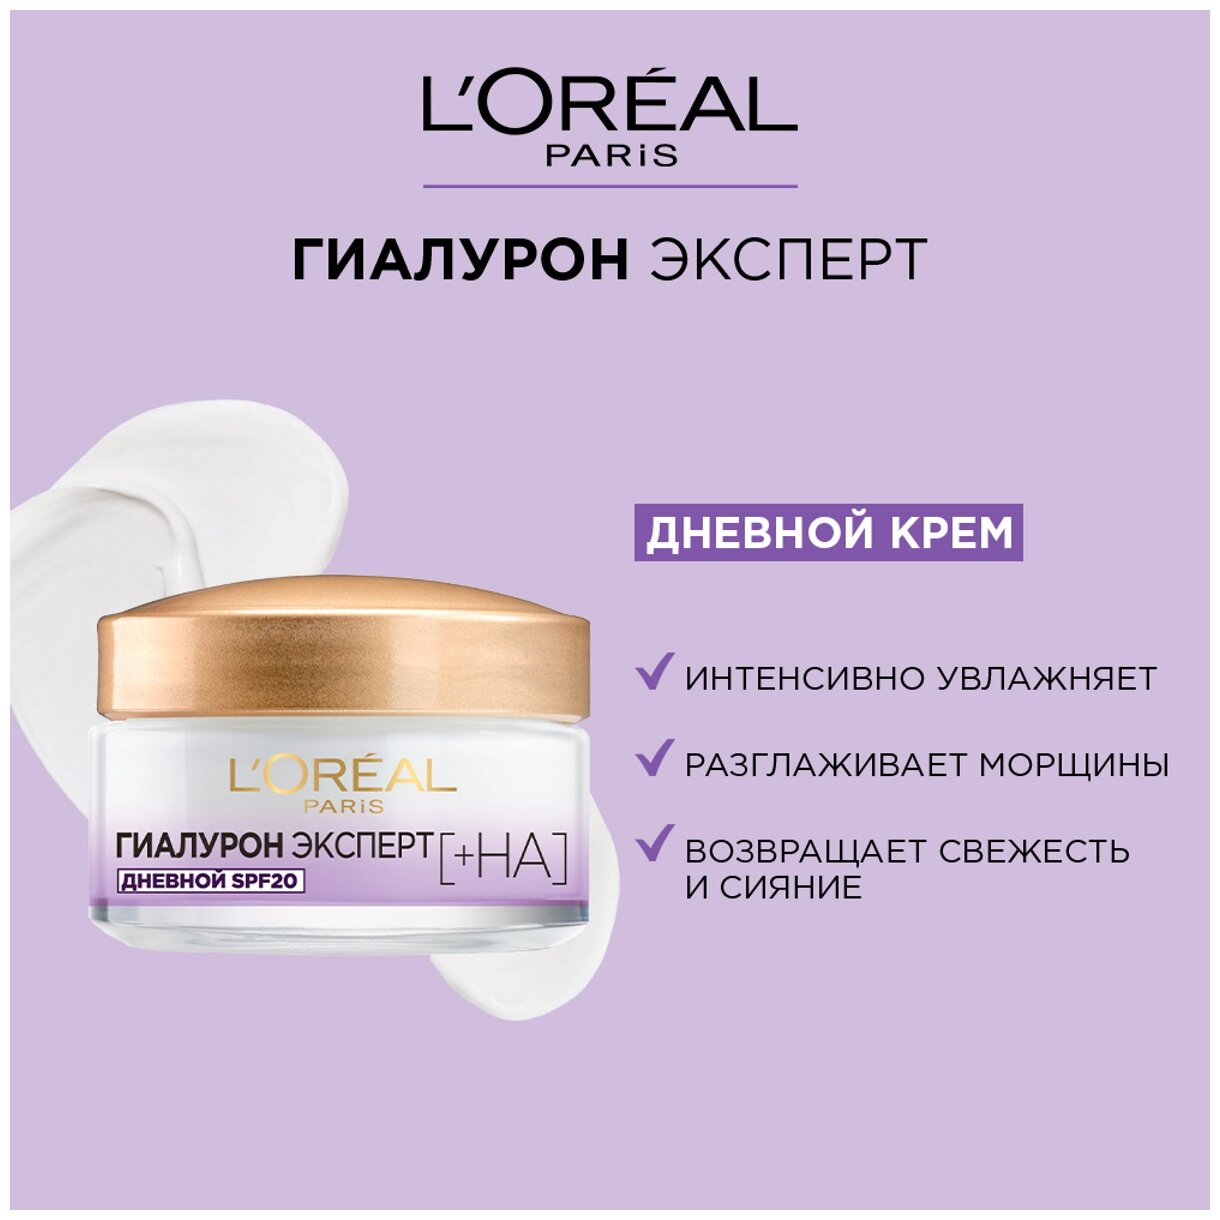 Дневной крем для кожи лица L’Oréal Paris Гиалурон эксперт SPF20, 50 мл L'OREAL - фото №13